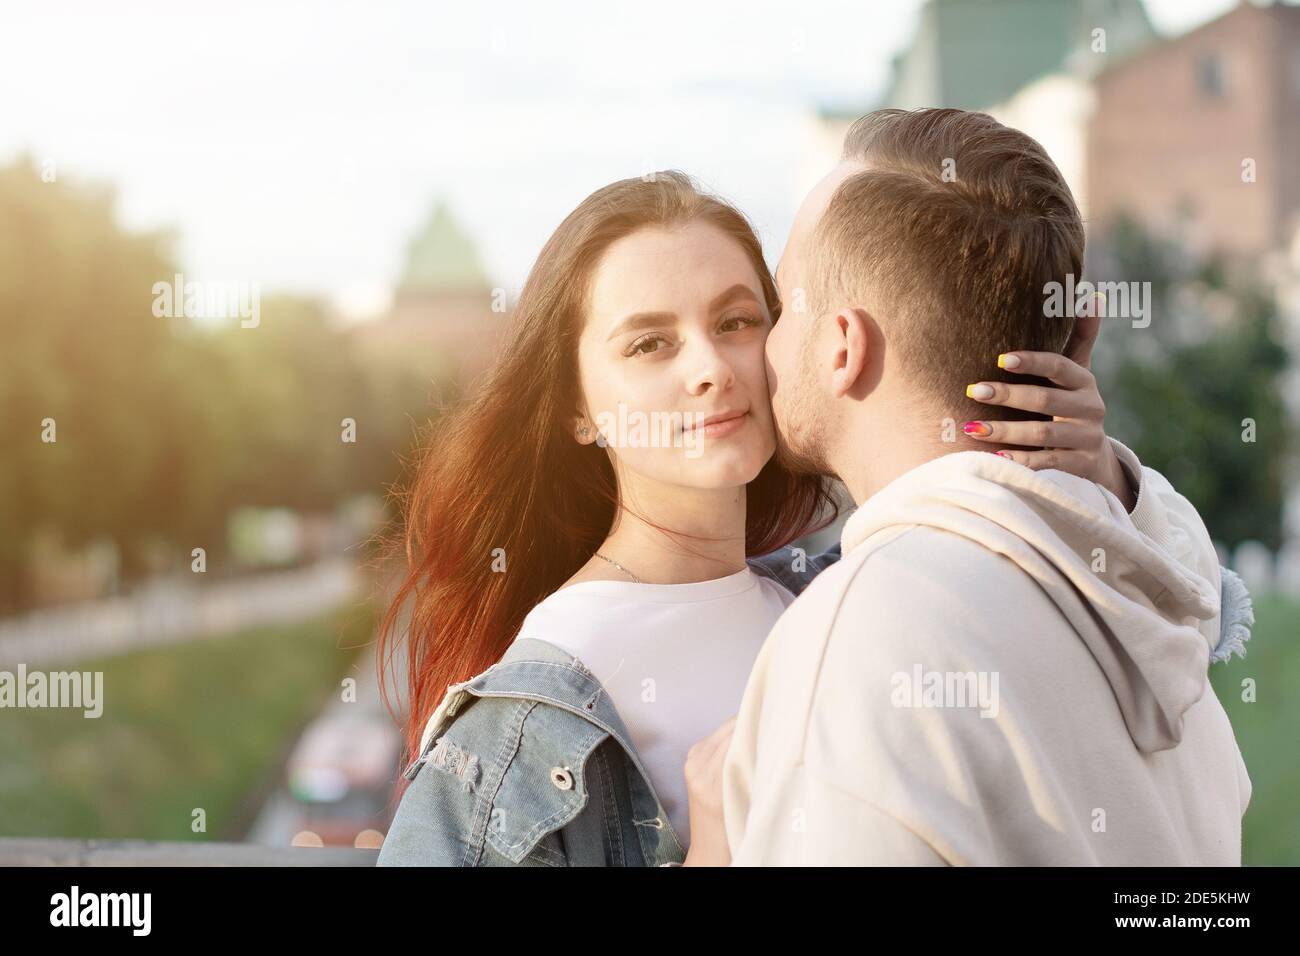 Felice giovane coppia caucasica donna e uomo sta condividendo il sorriso e camminando in strada estate. Concept coppia innamorata. La donna abbuggia il marito Foto Stock